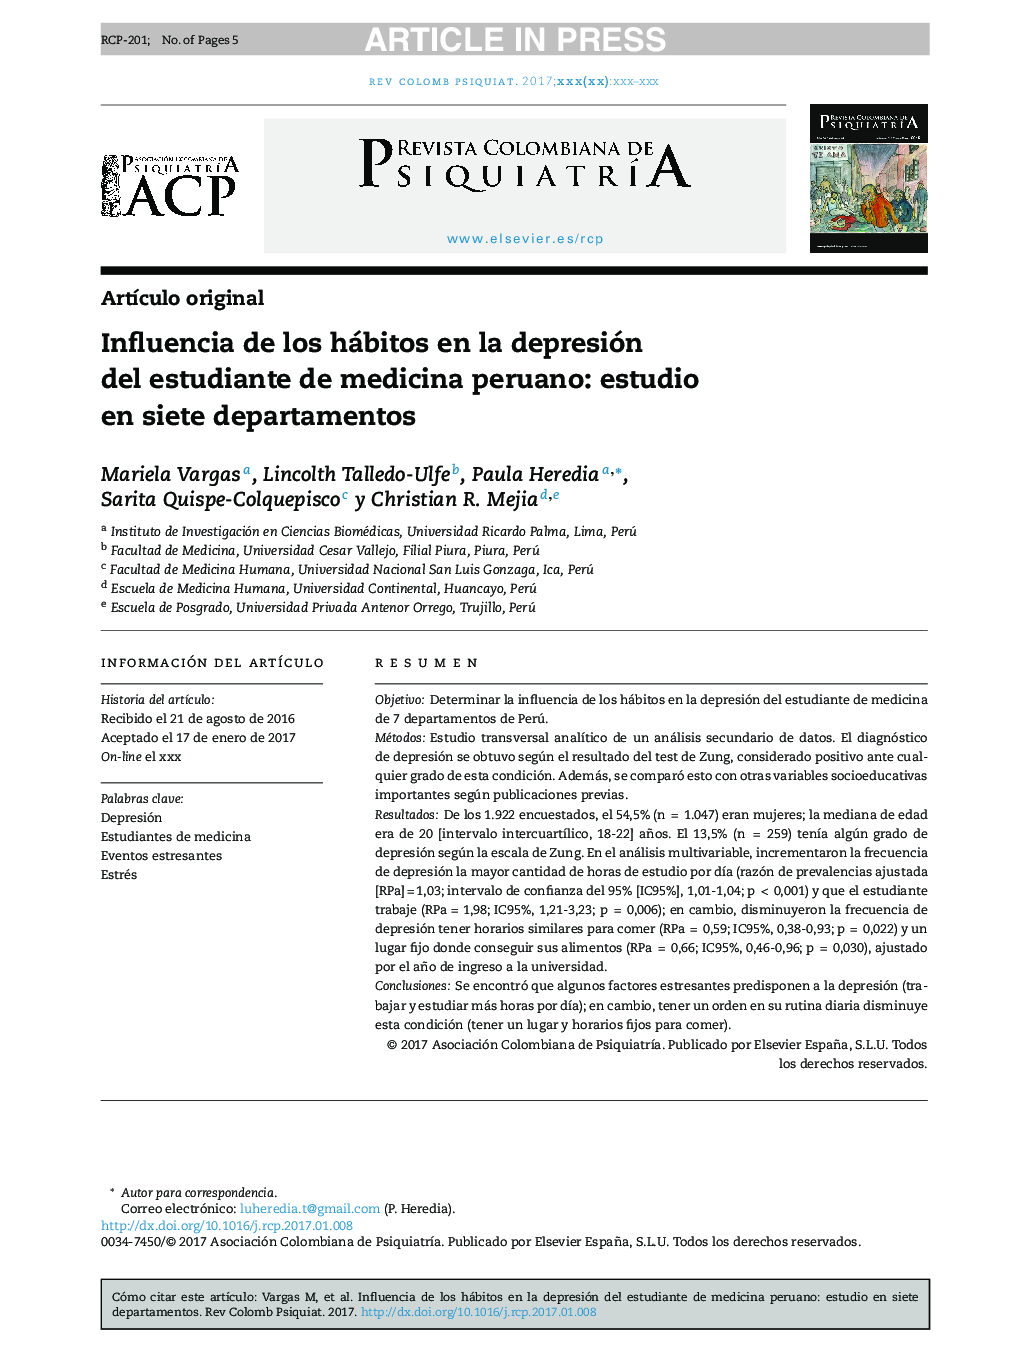 Influencia de los hábitos en la depresión delÂ estudiante deÂ medicina peruano: estudio enÂ siete departamentos